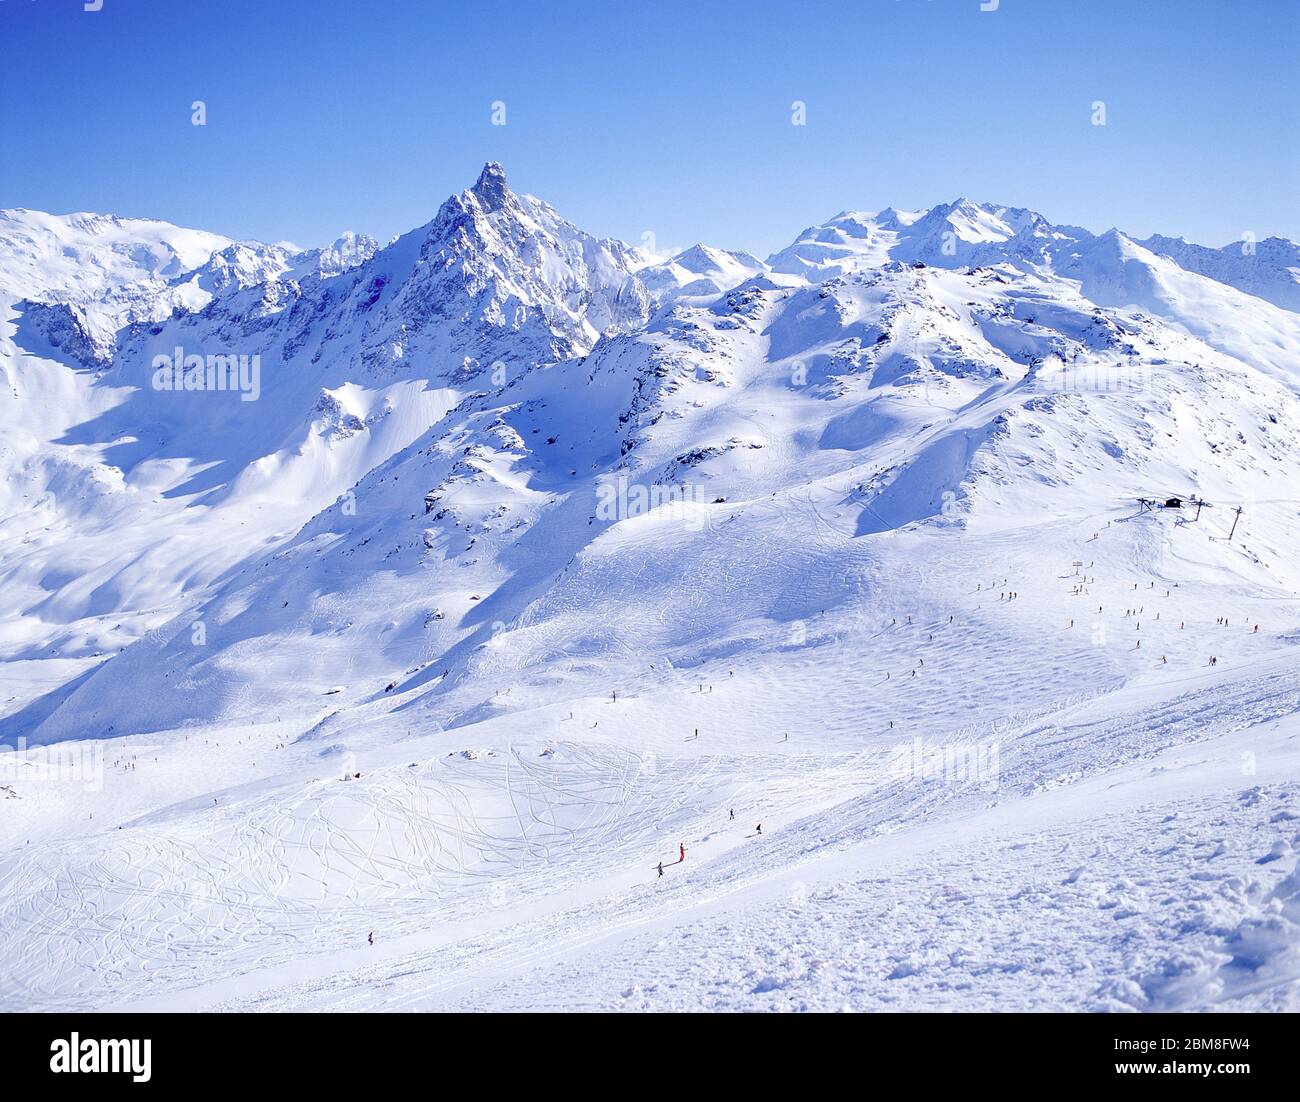 Ski slopes and mountains, Meribel, Savoie, France Stock Photo